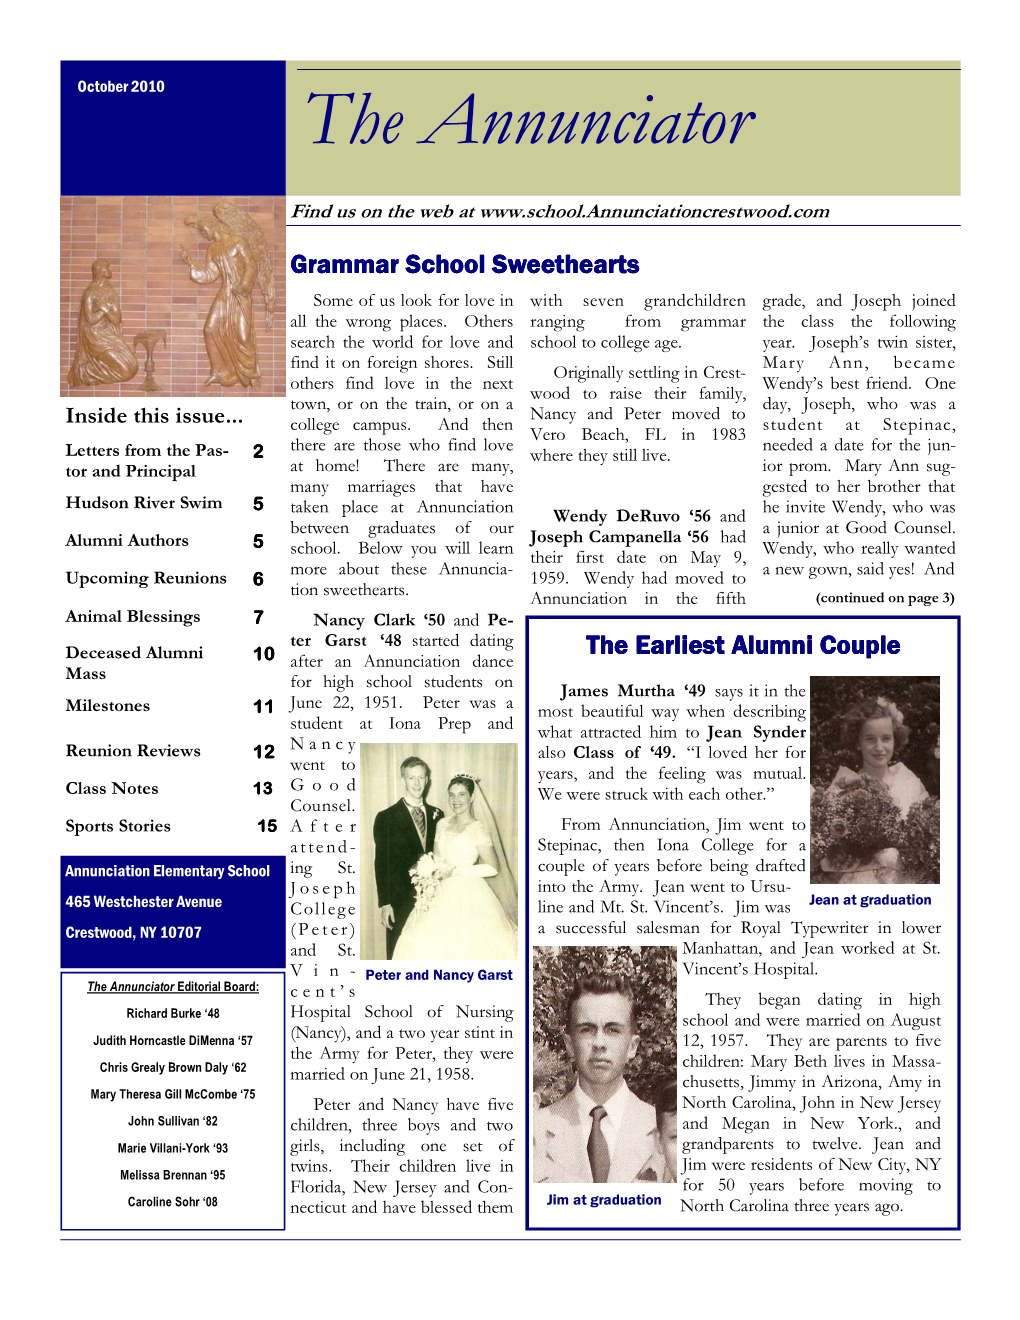 Annunciation Newsletter Oct 2010